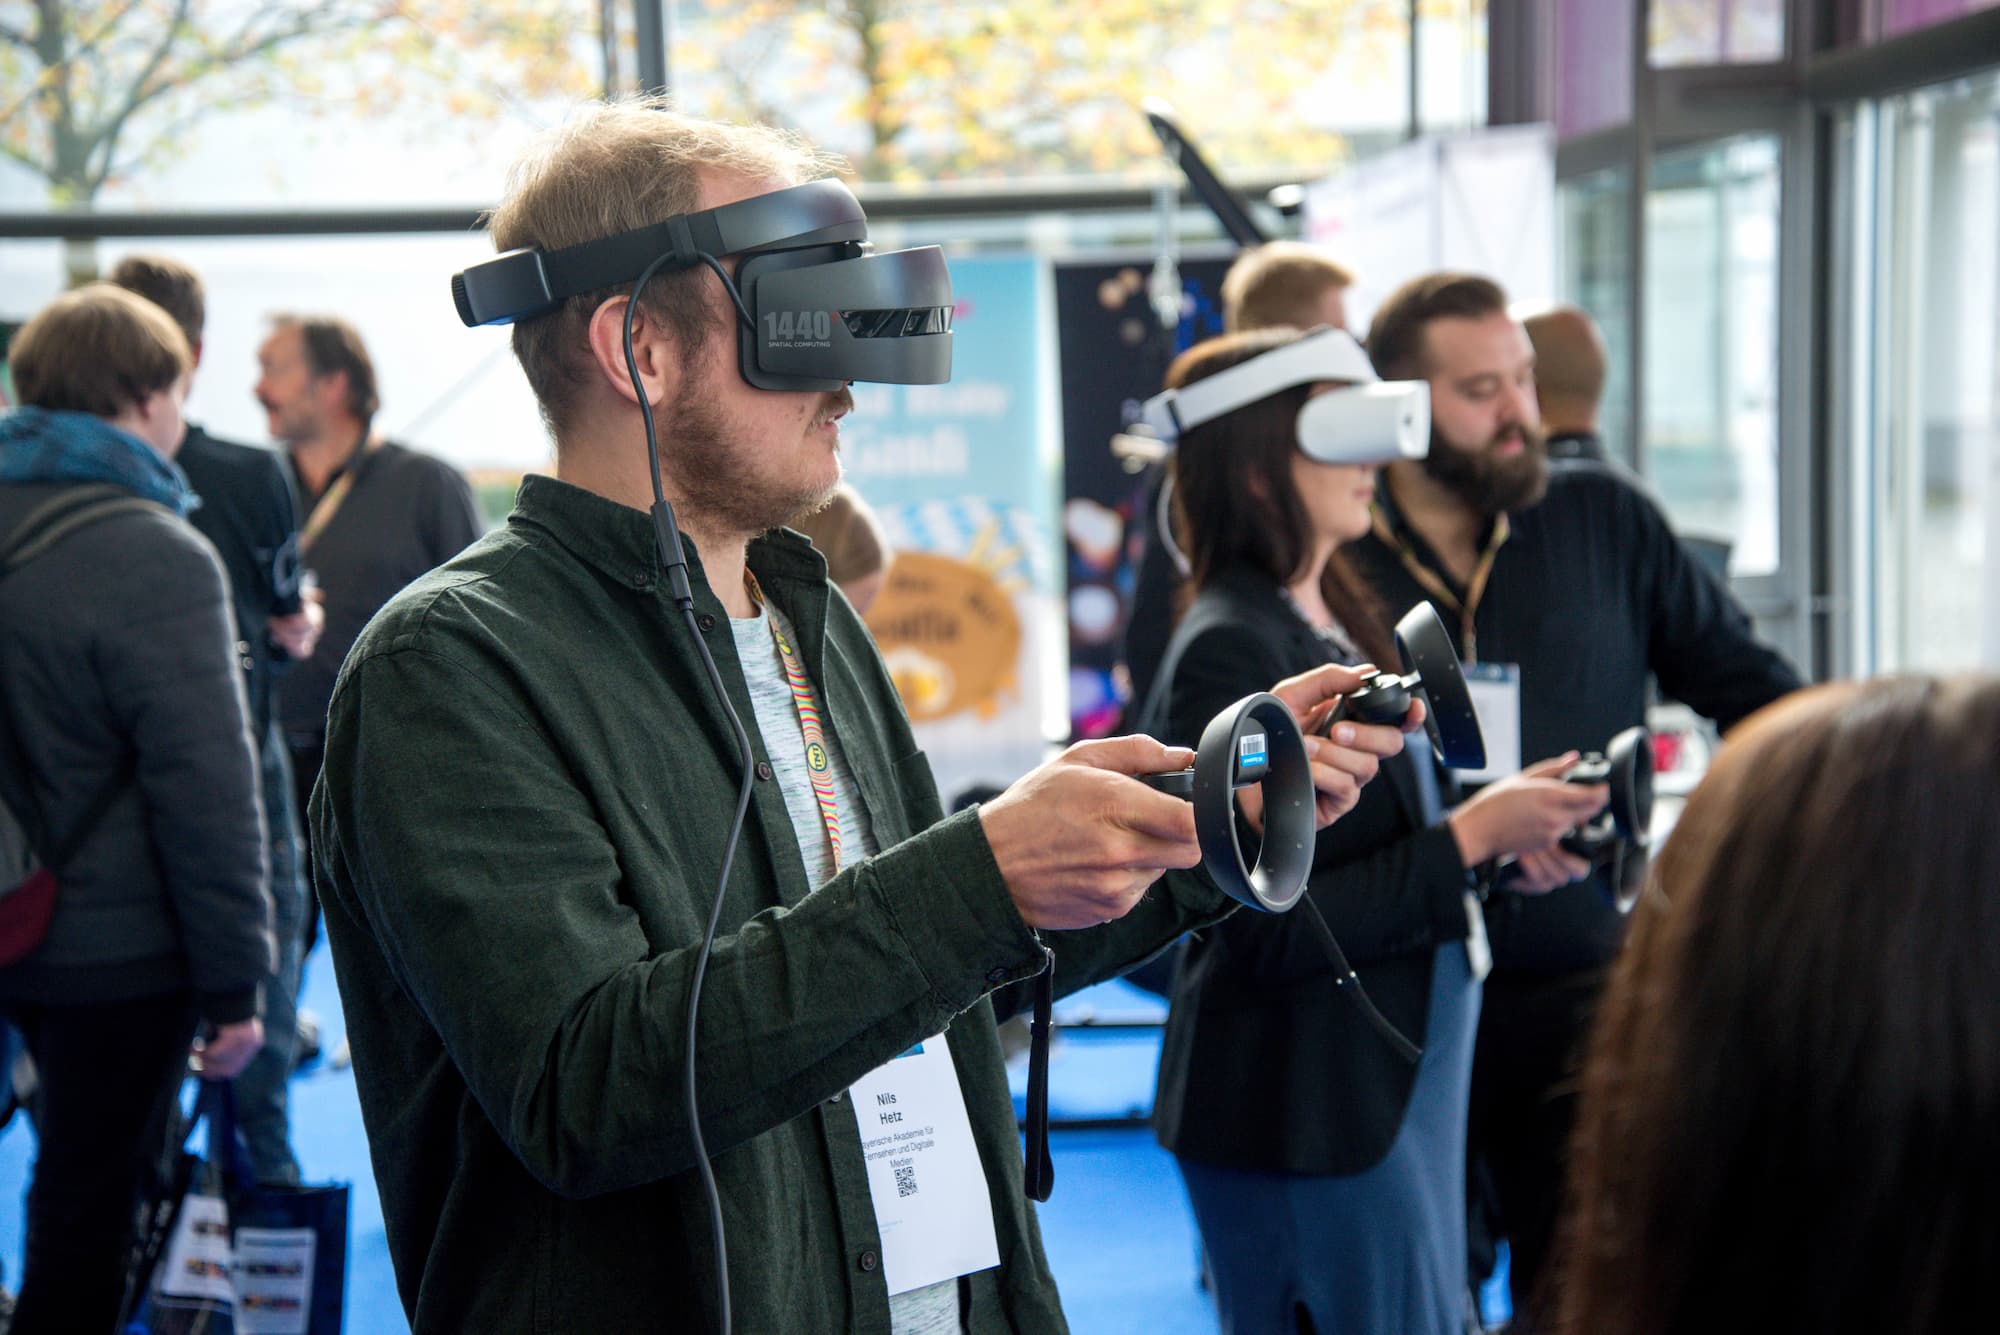 Estará a Apple a trabalhar em óculos de Realidade Virtual?